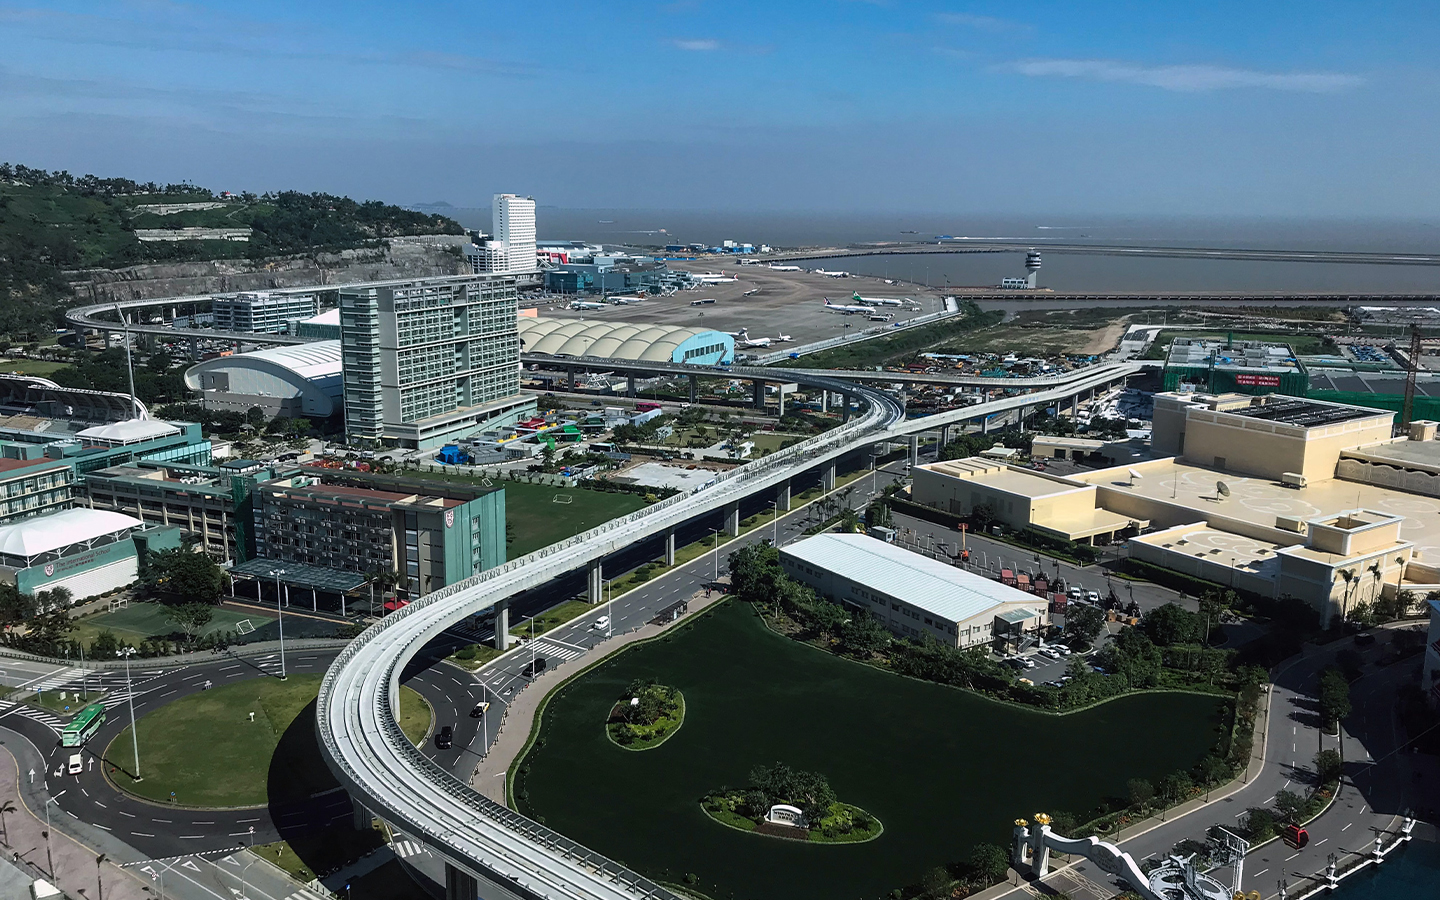 Macau airport’s passenger volume